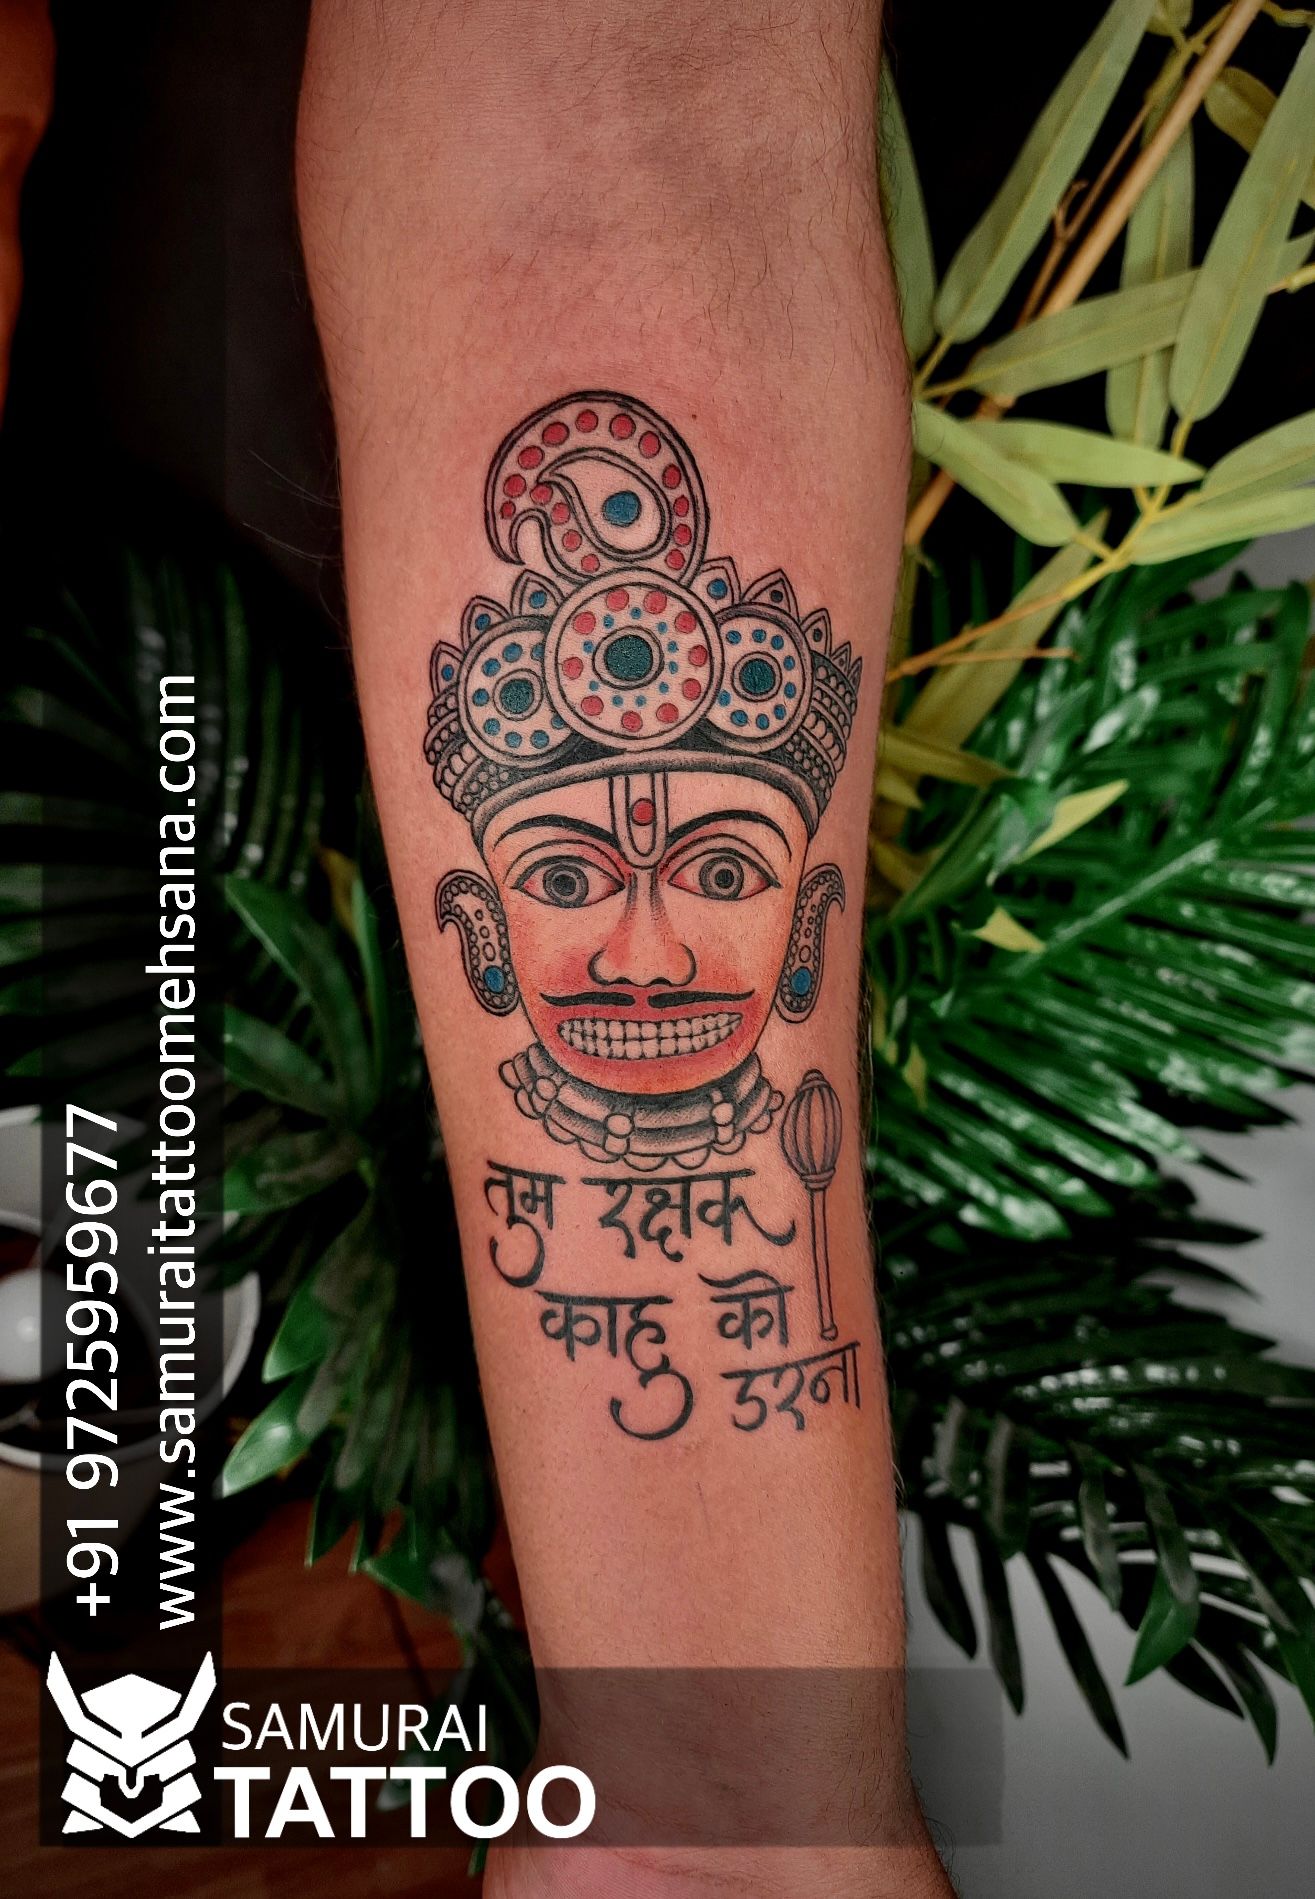 Hanuman dada tattoo |Bajrangbali tattoo |Hanumanji tattoo | Hand tattoos  for guys, Band tattoo designs, Om tattoo design